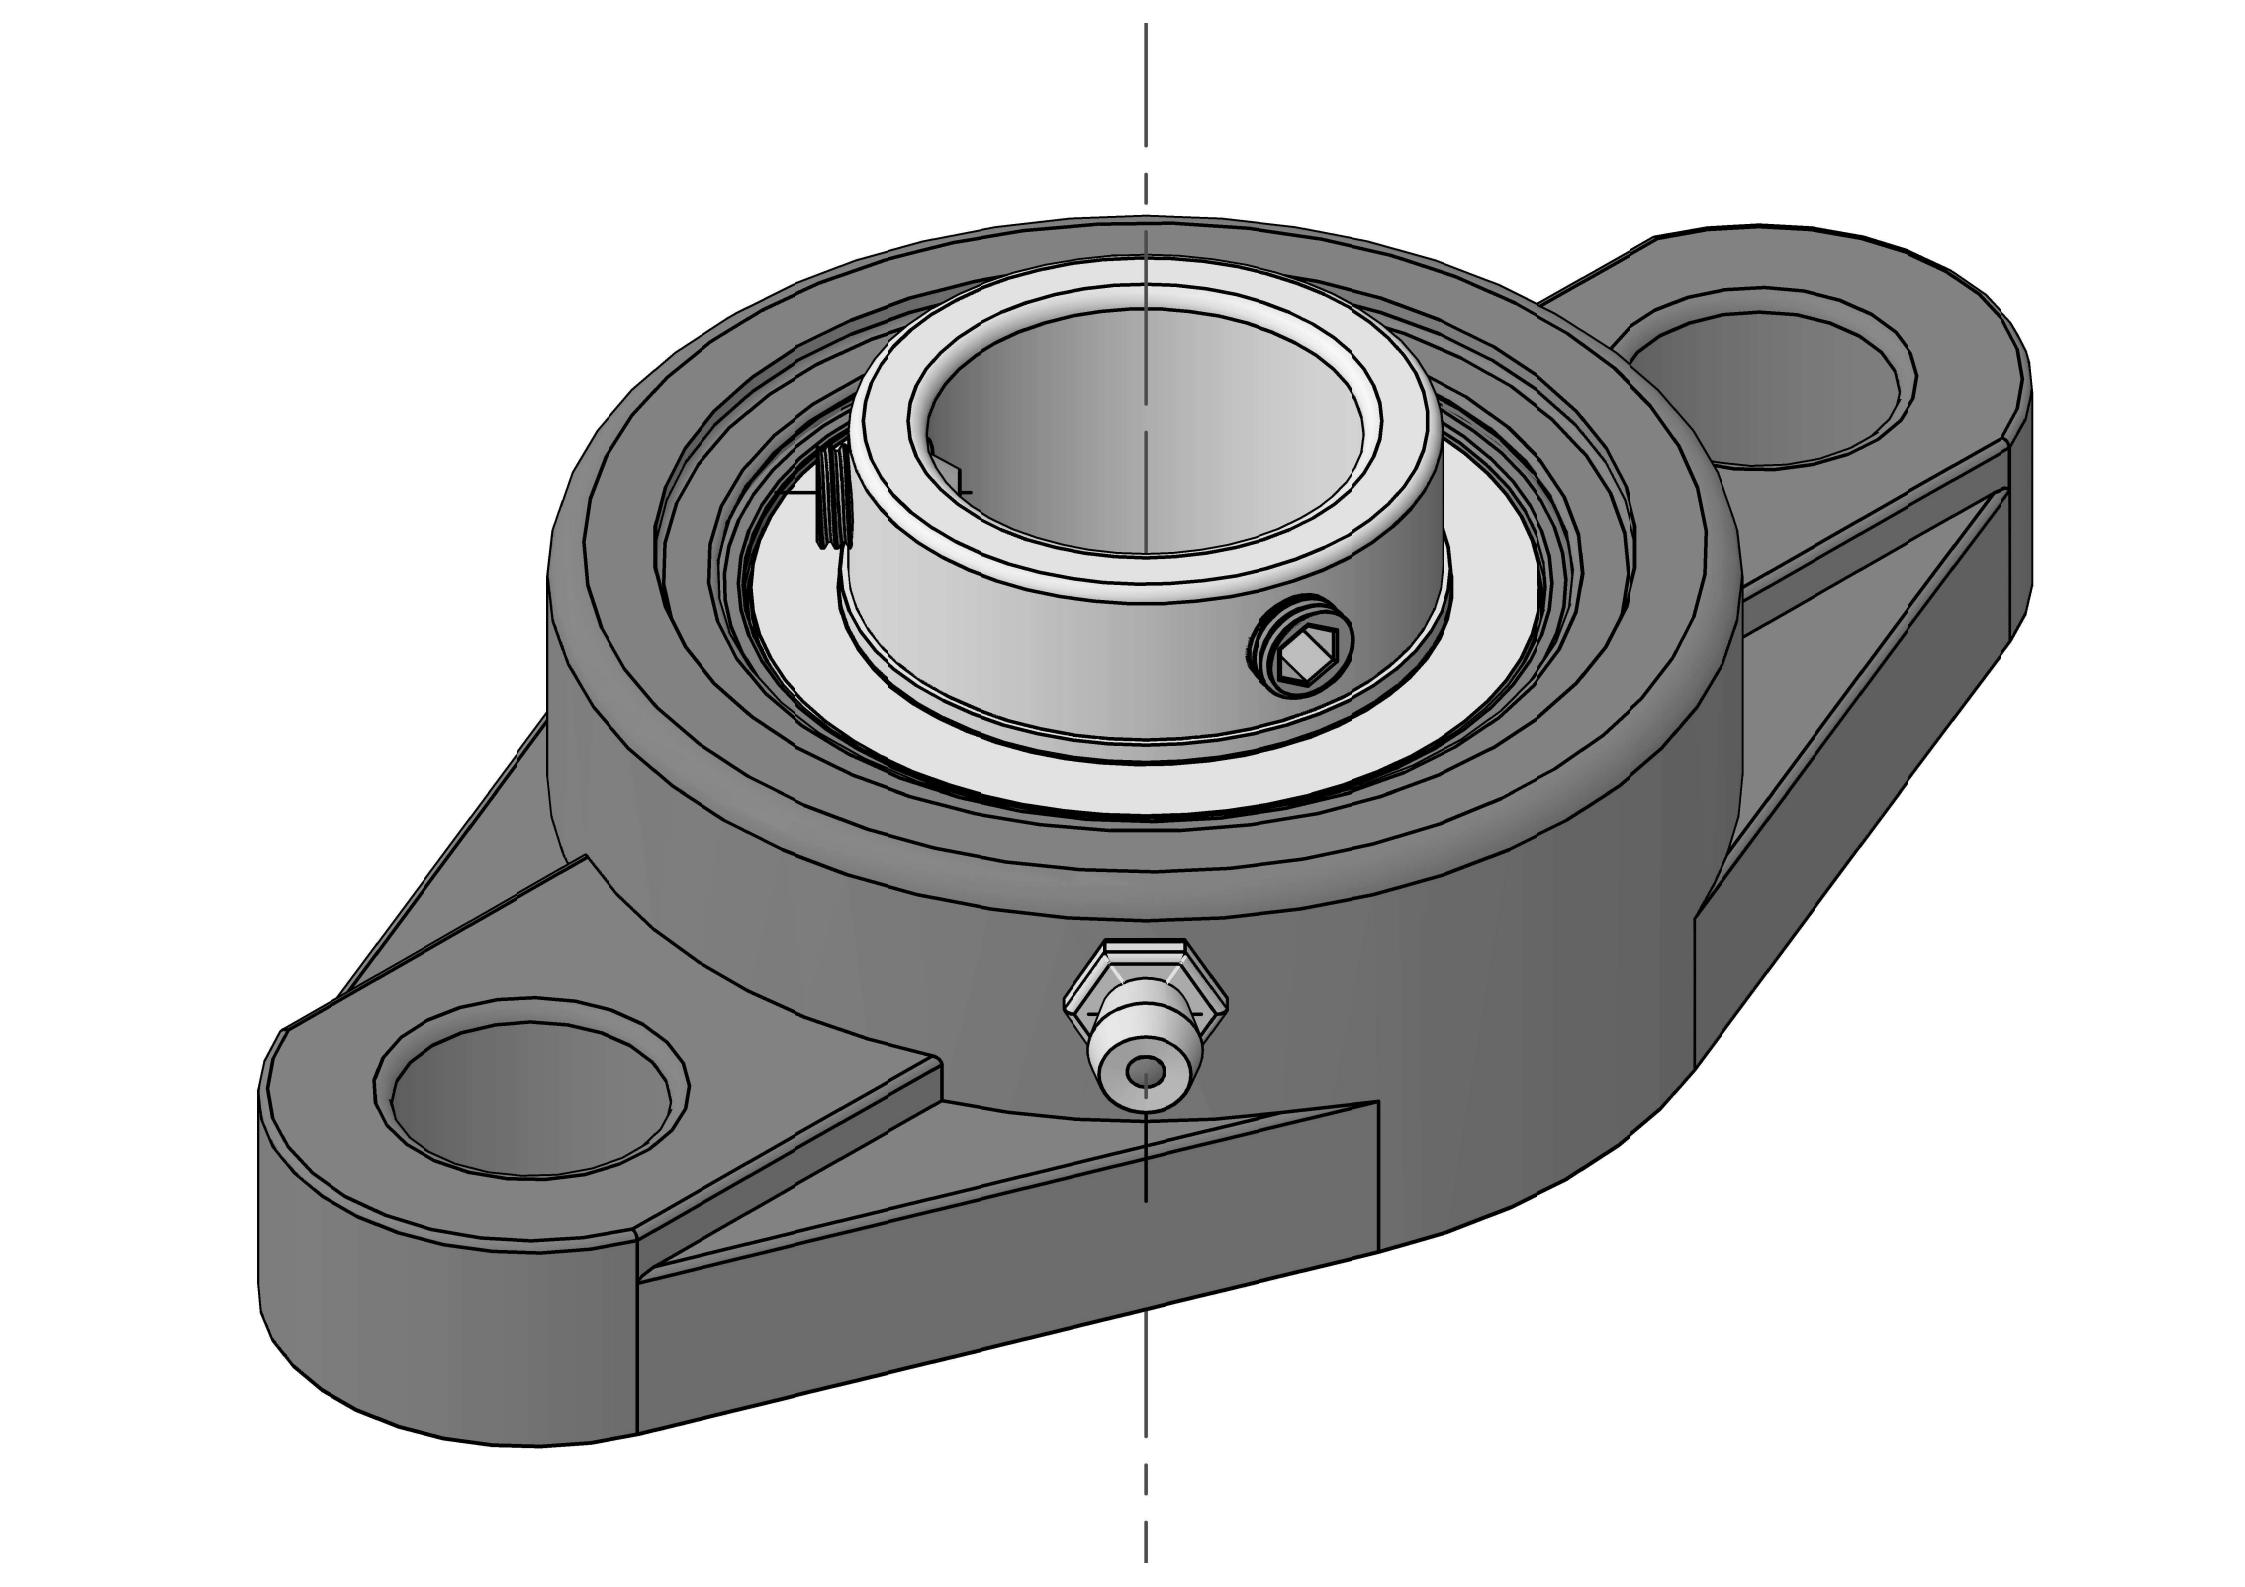 UCFL307 Zweibolzen-Ovalflanschlagereinheiten mit 35-mm-Bohrung